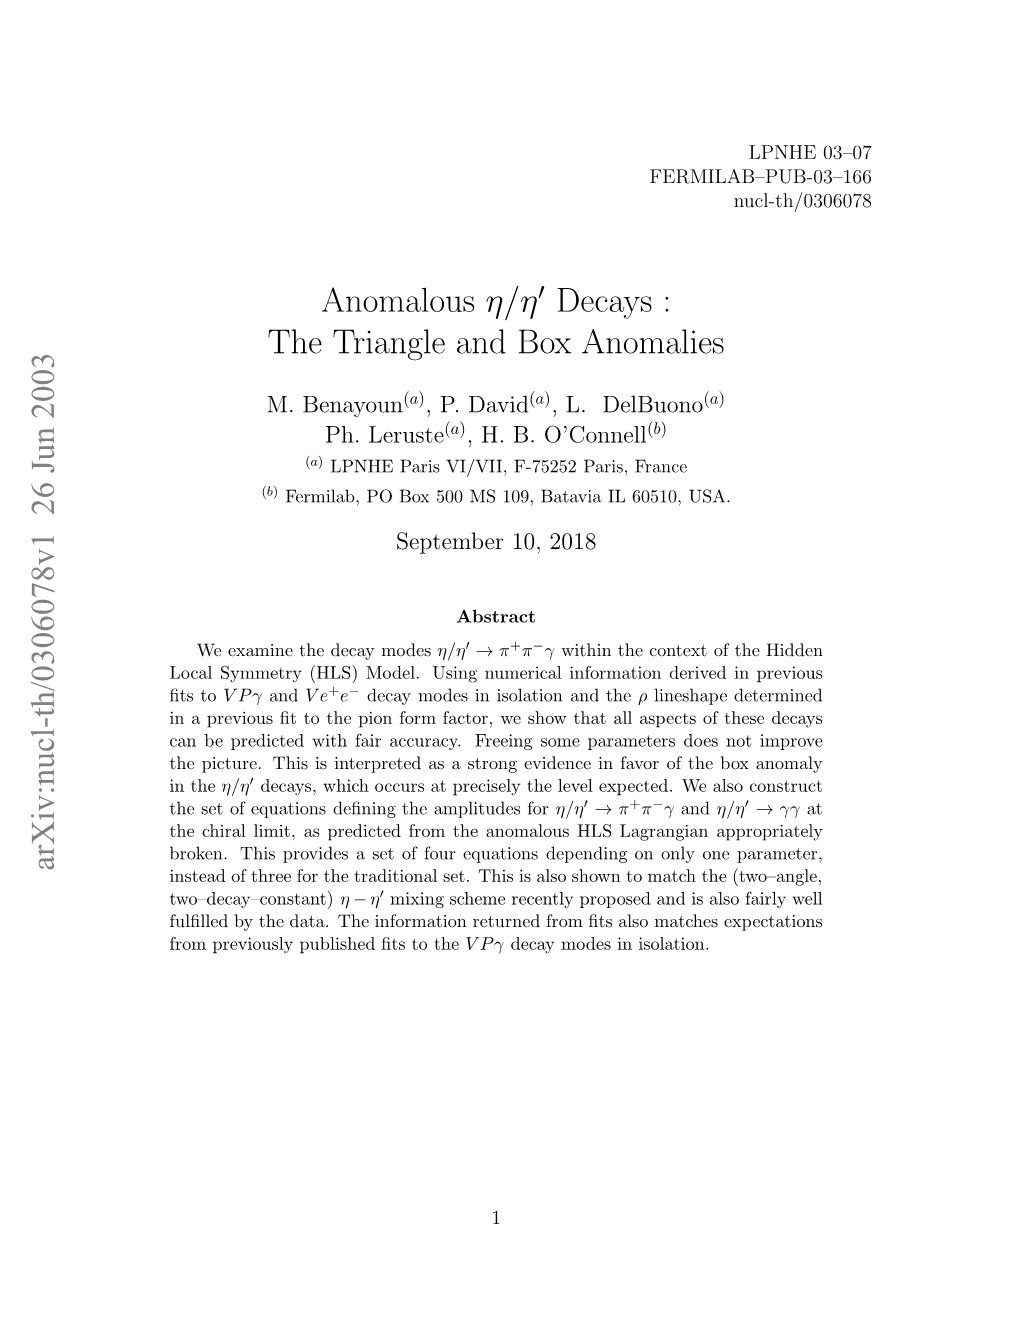 Anomalous $\Eta/\Eta^\Prime $ Decays: the Triangle and Box Anomalies